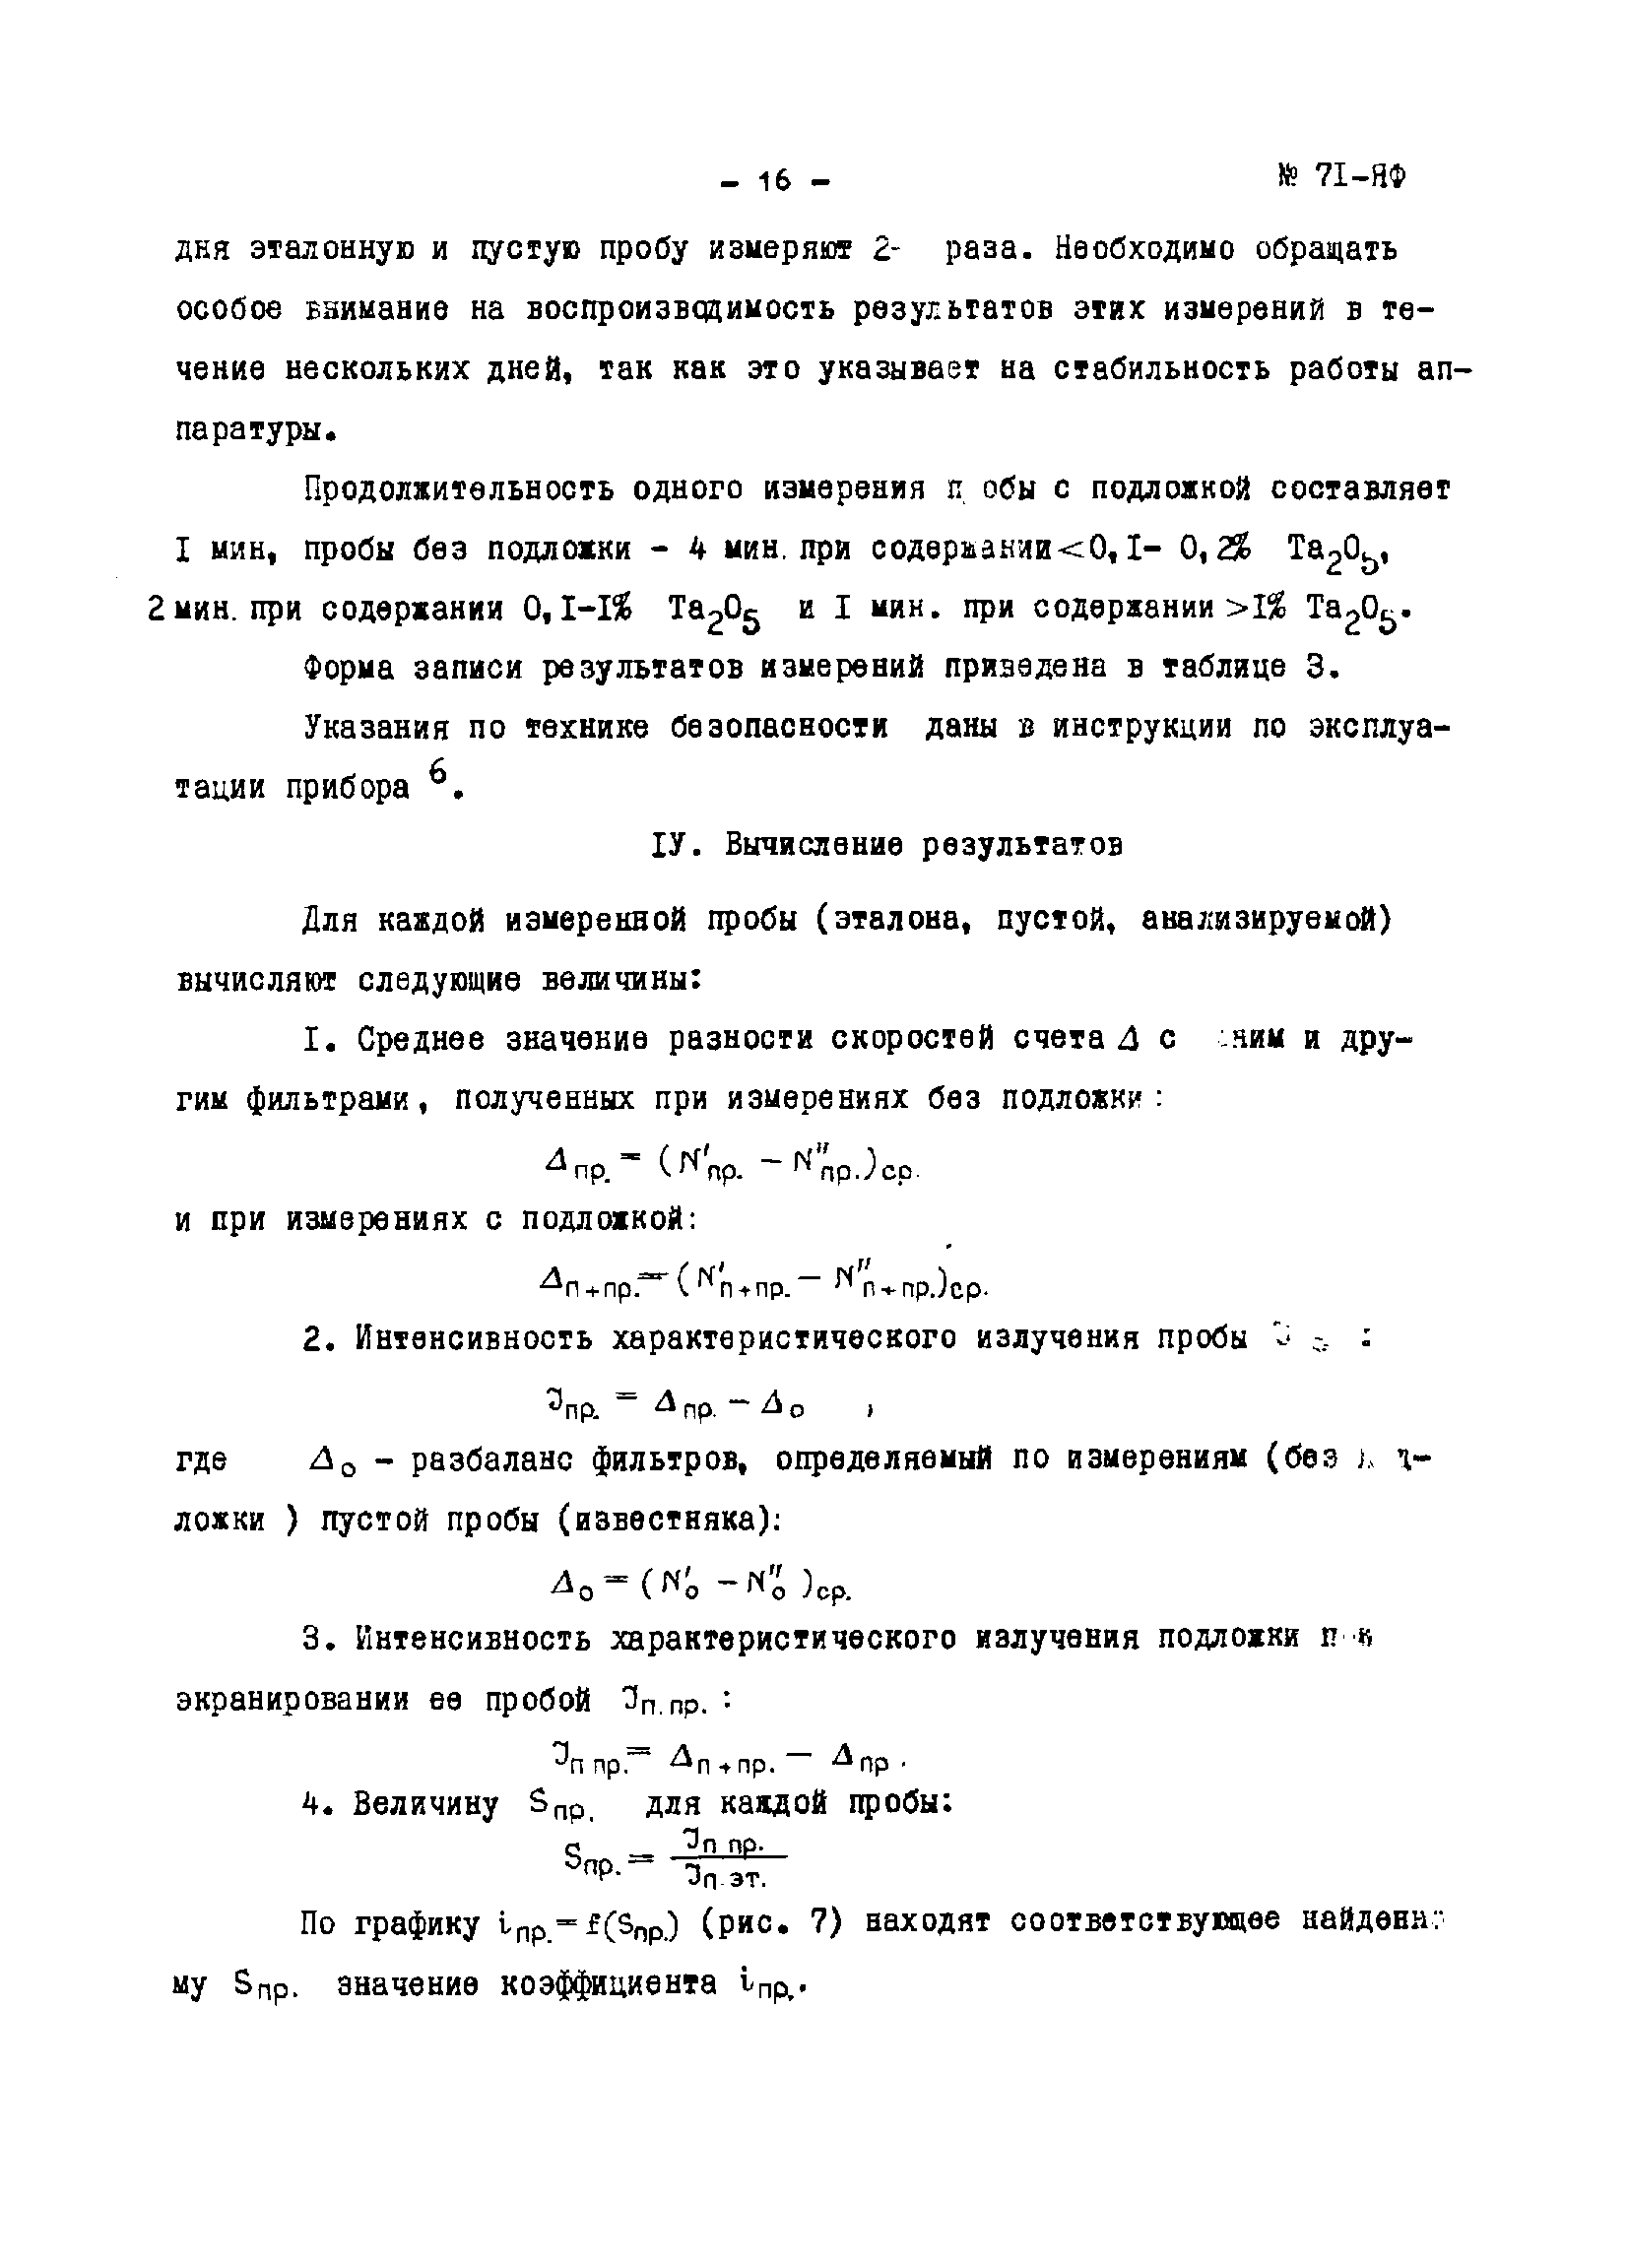 Инструкция НСАМ 71-ЯФ